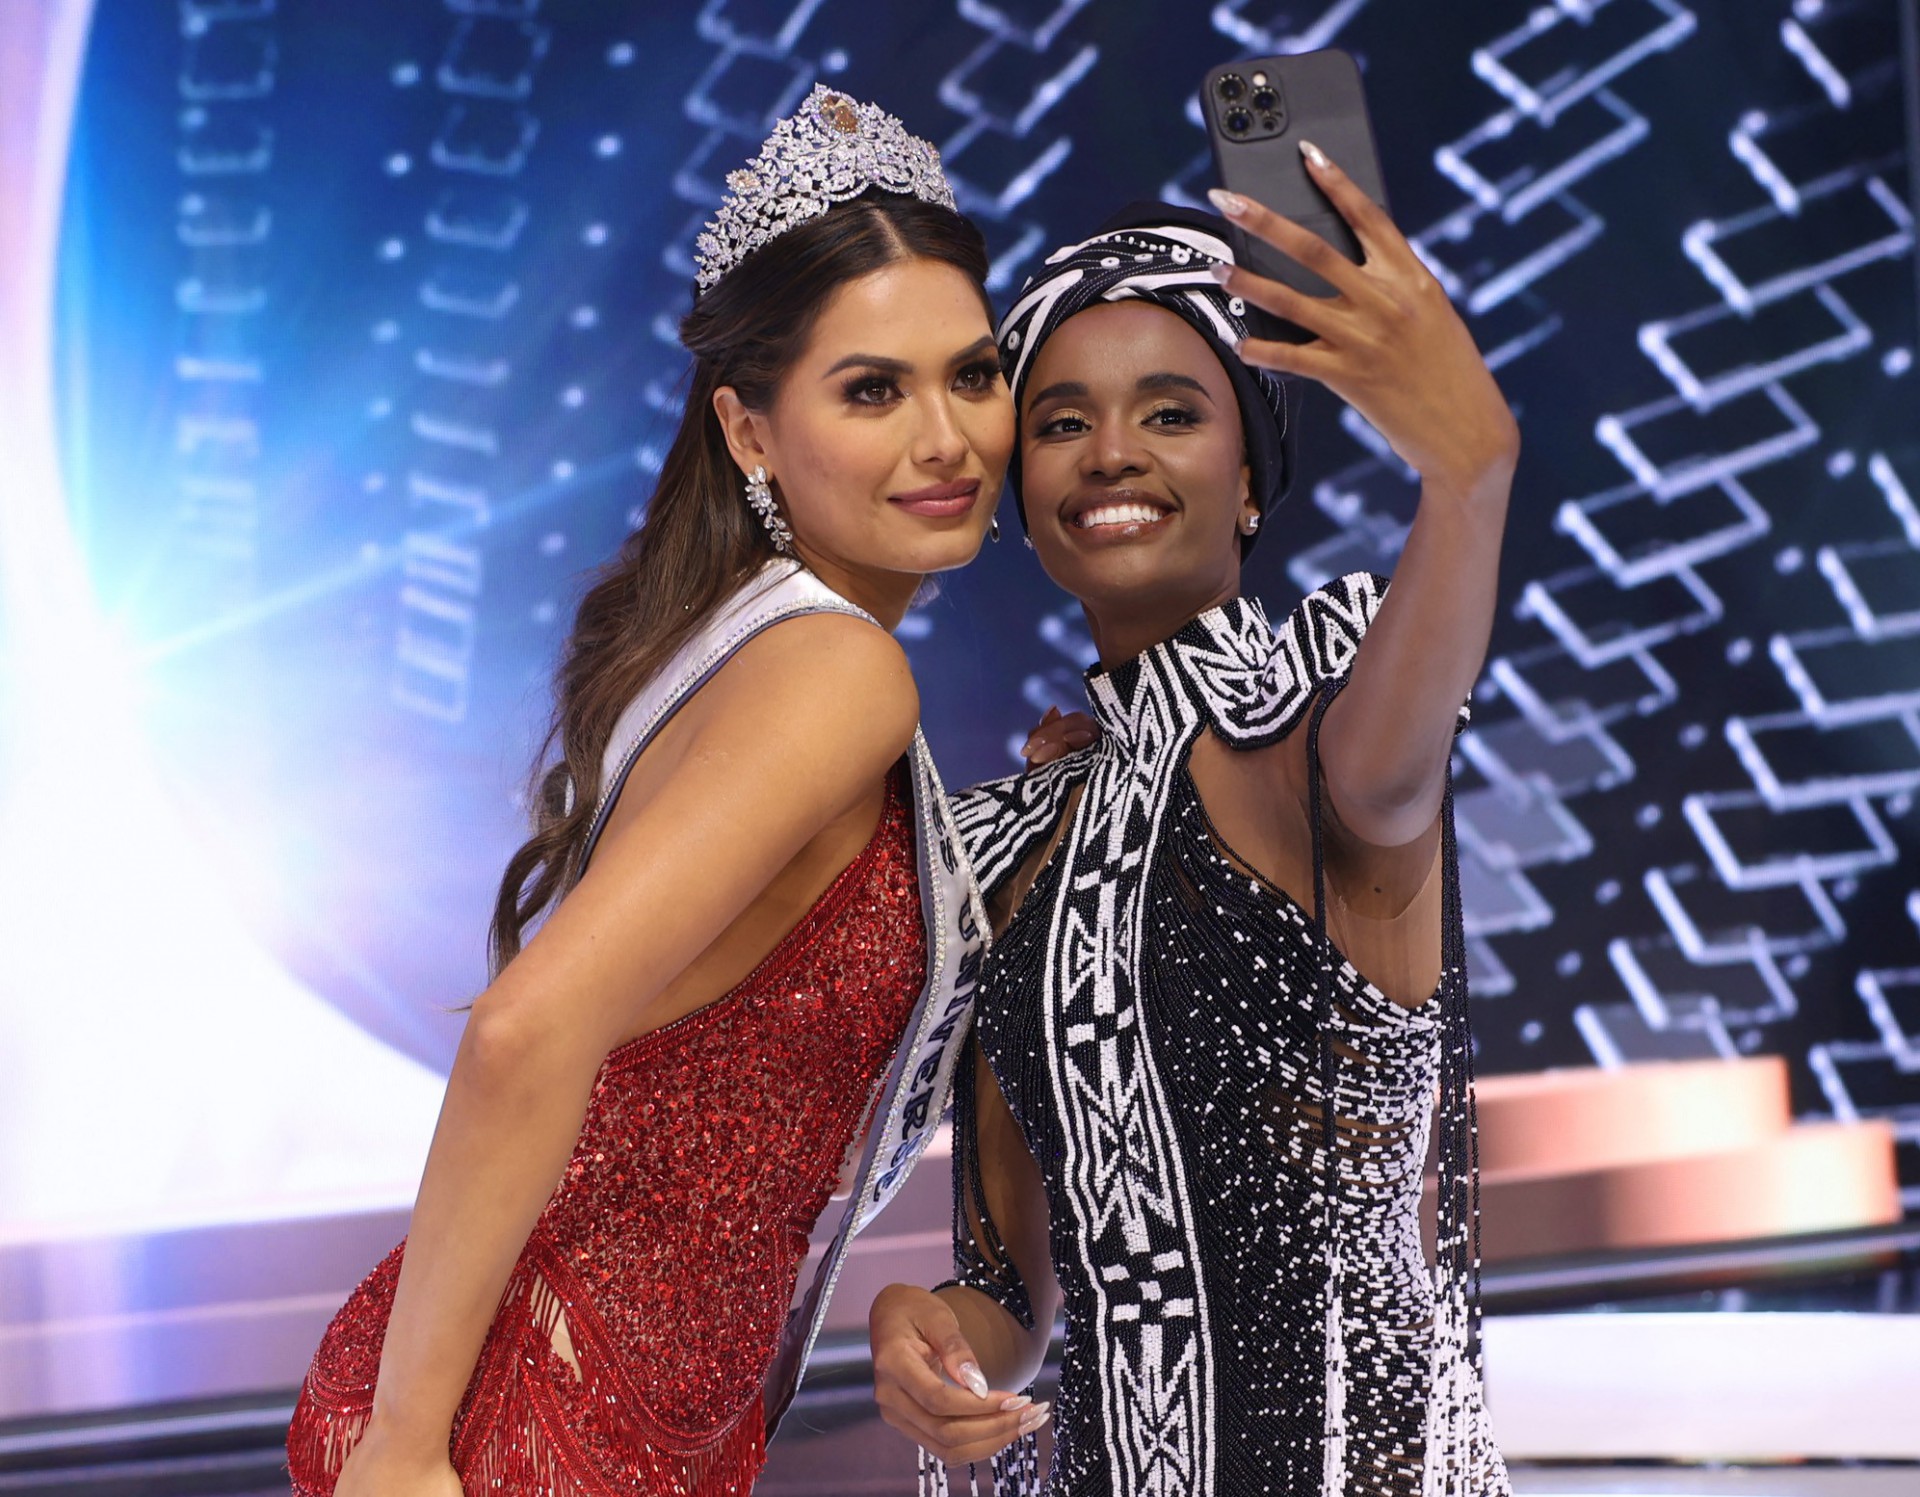 Mexicana vence Miss Universo e brasileira fica em segundo lugar